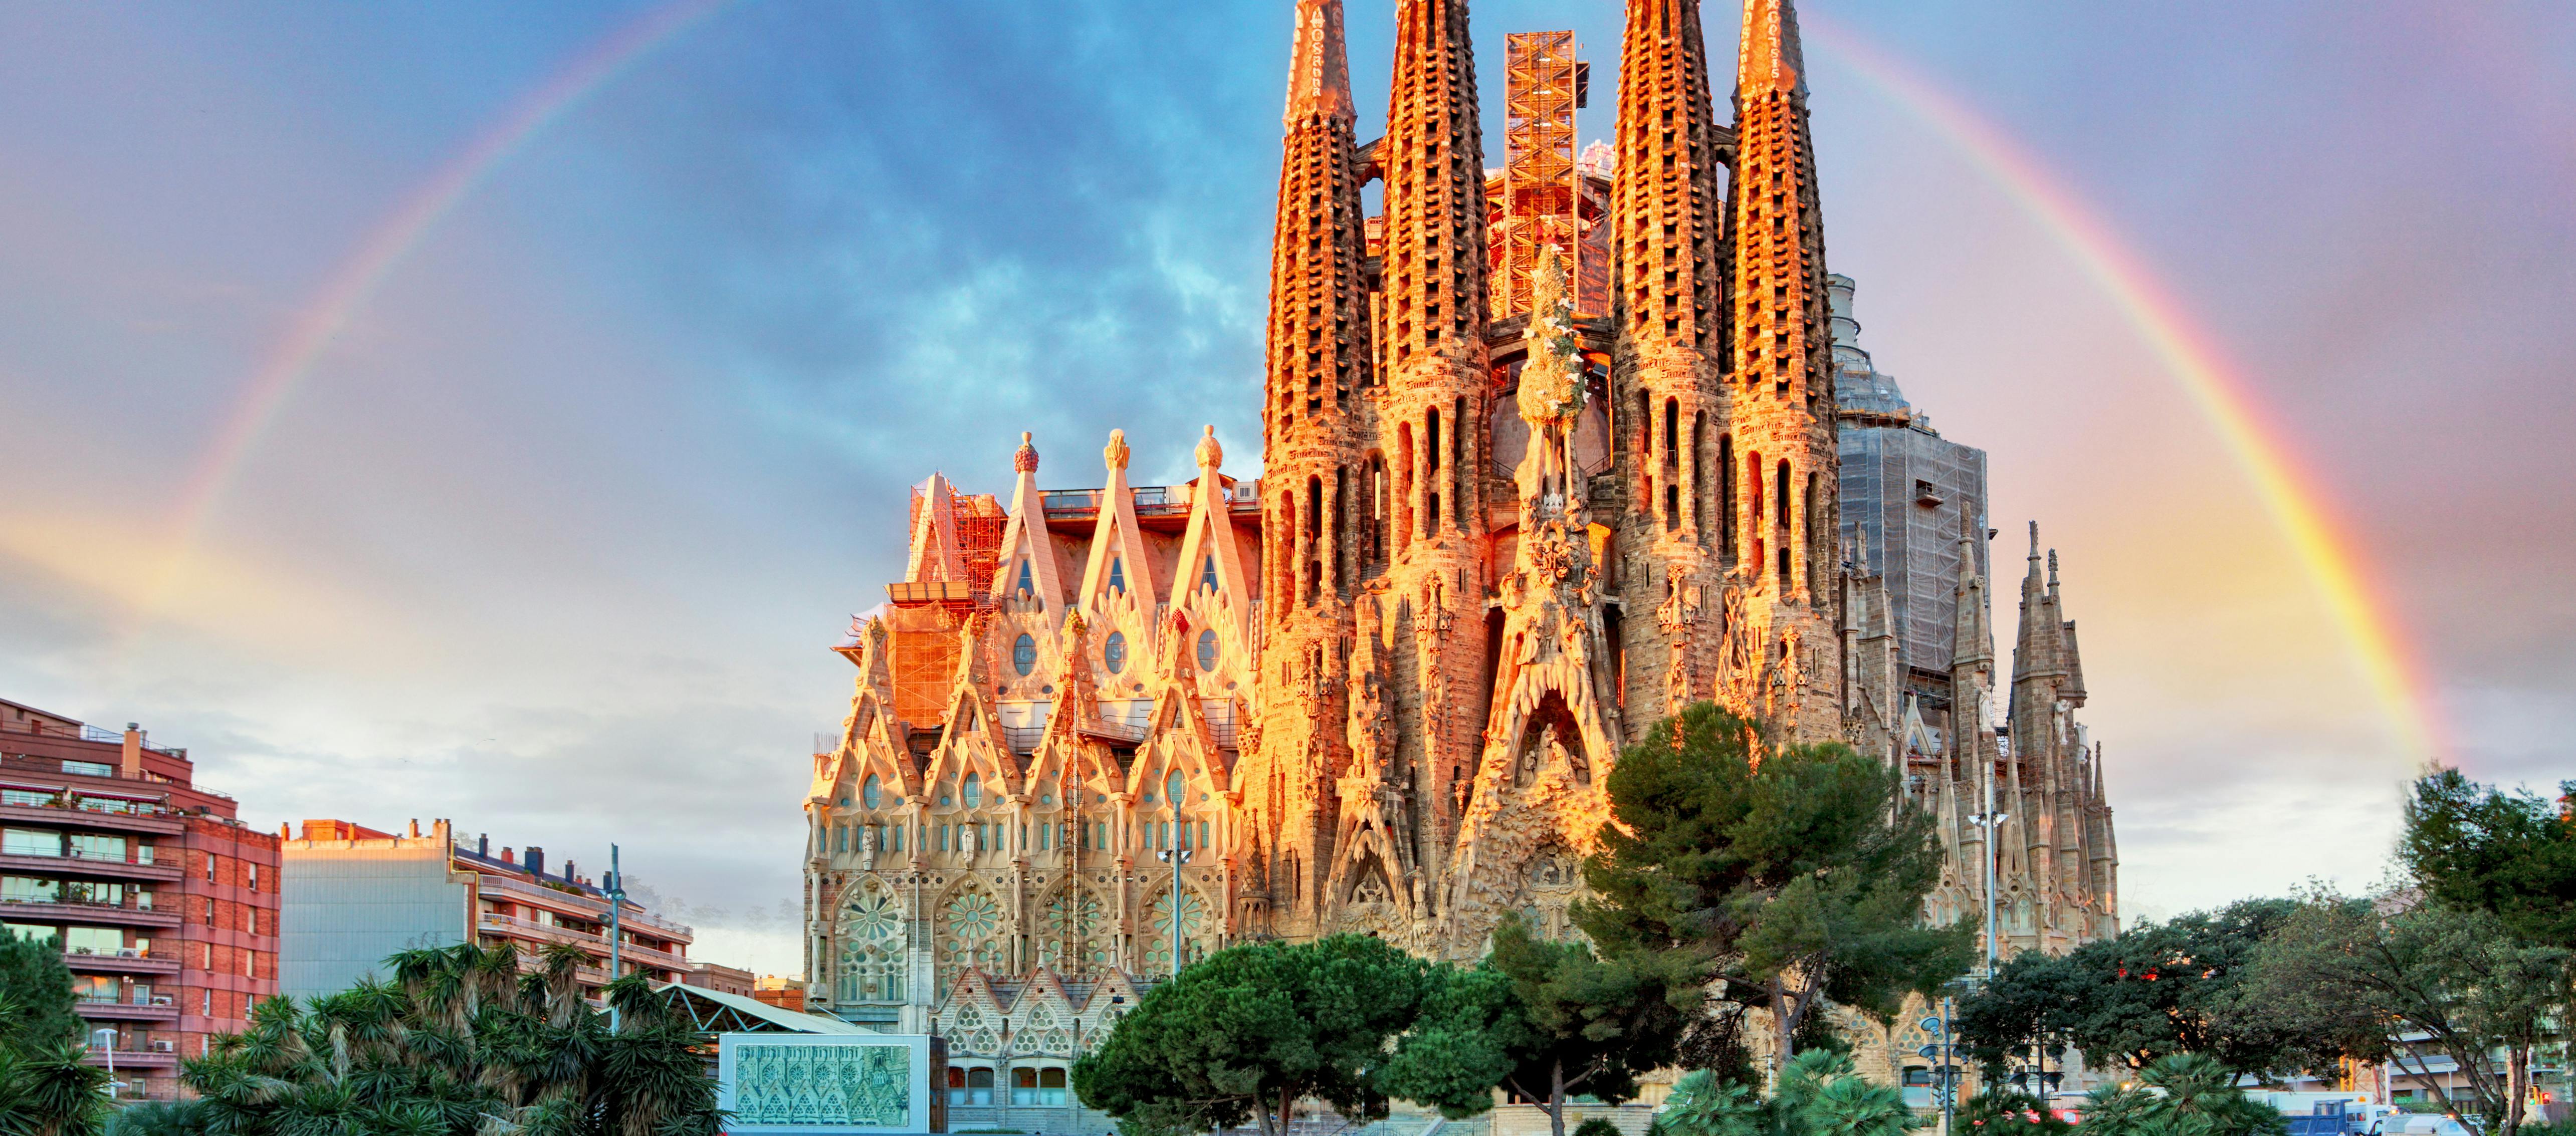 Całodniowa wycieczka po Barcelonie i wstęp bez kolejki do Sagrada Família